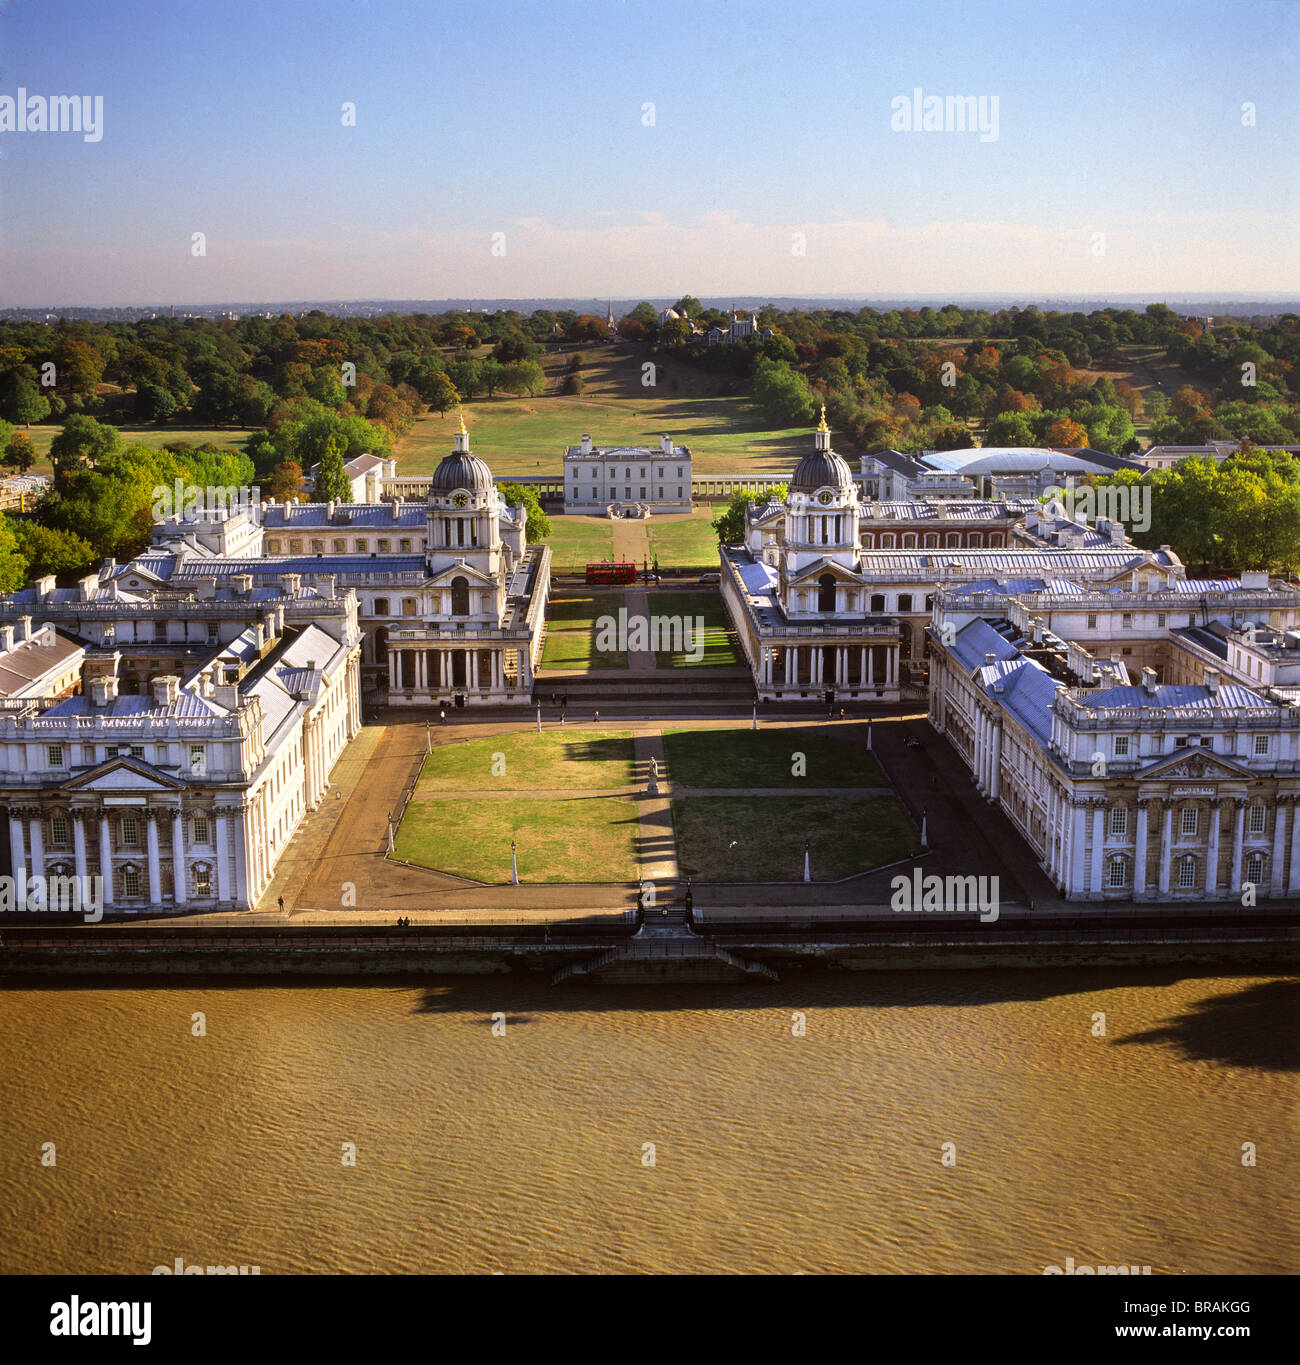 Immagine aerea del Royal Naval College e Queen's House, UNESCO, Greenwich, London, Regno Unito Foto Stock